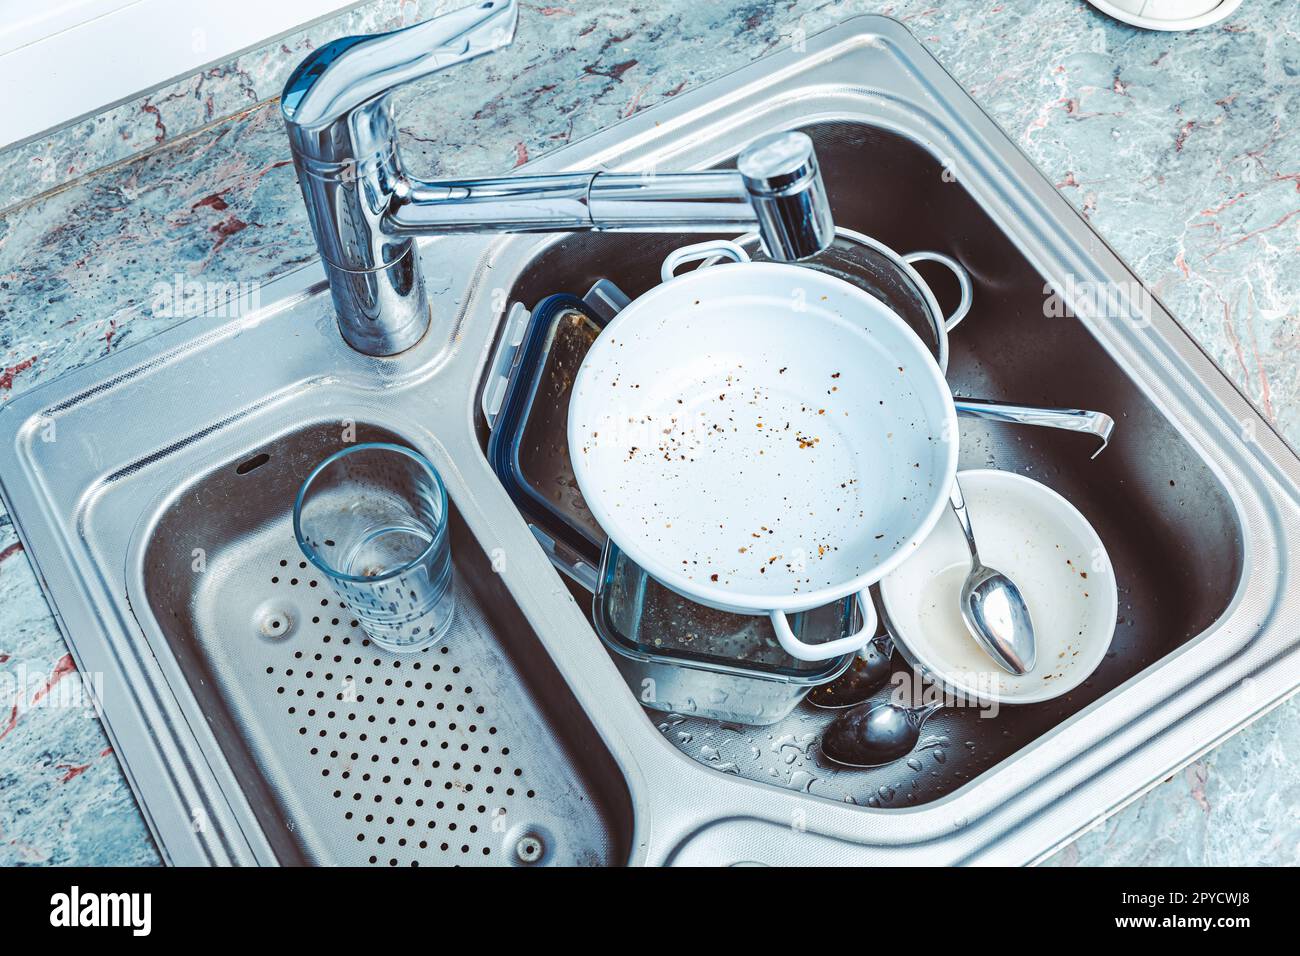 Geschirrspülmaschine - ein Haufen schmutzigem Geschirr im Spülbecken Stockfoto